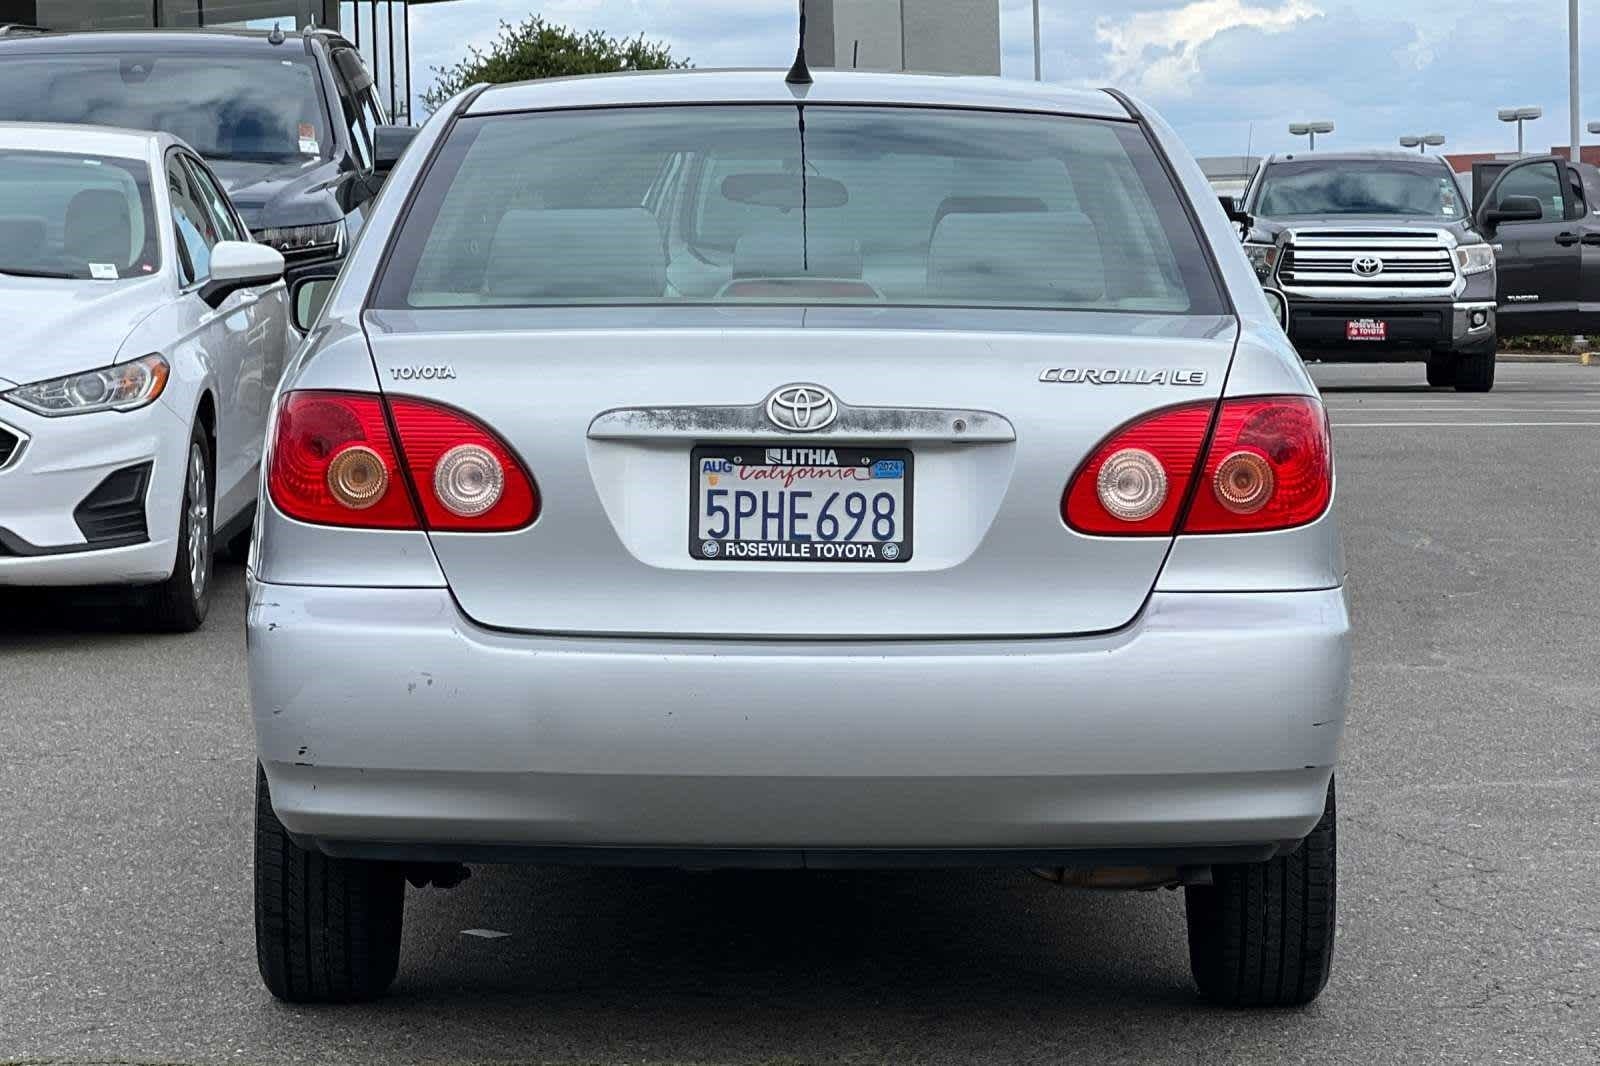 2005 Toyota Corolla LE